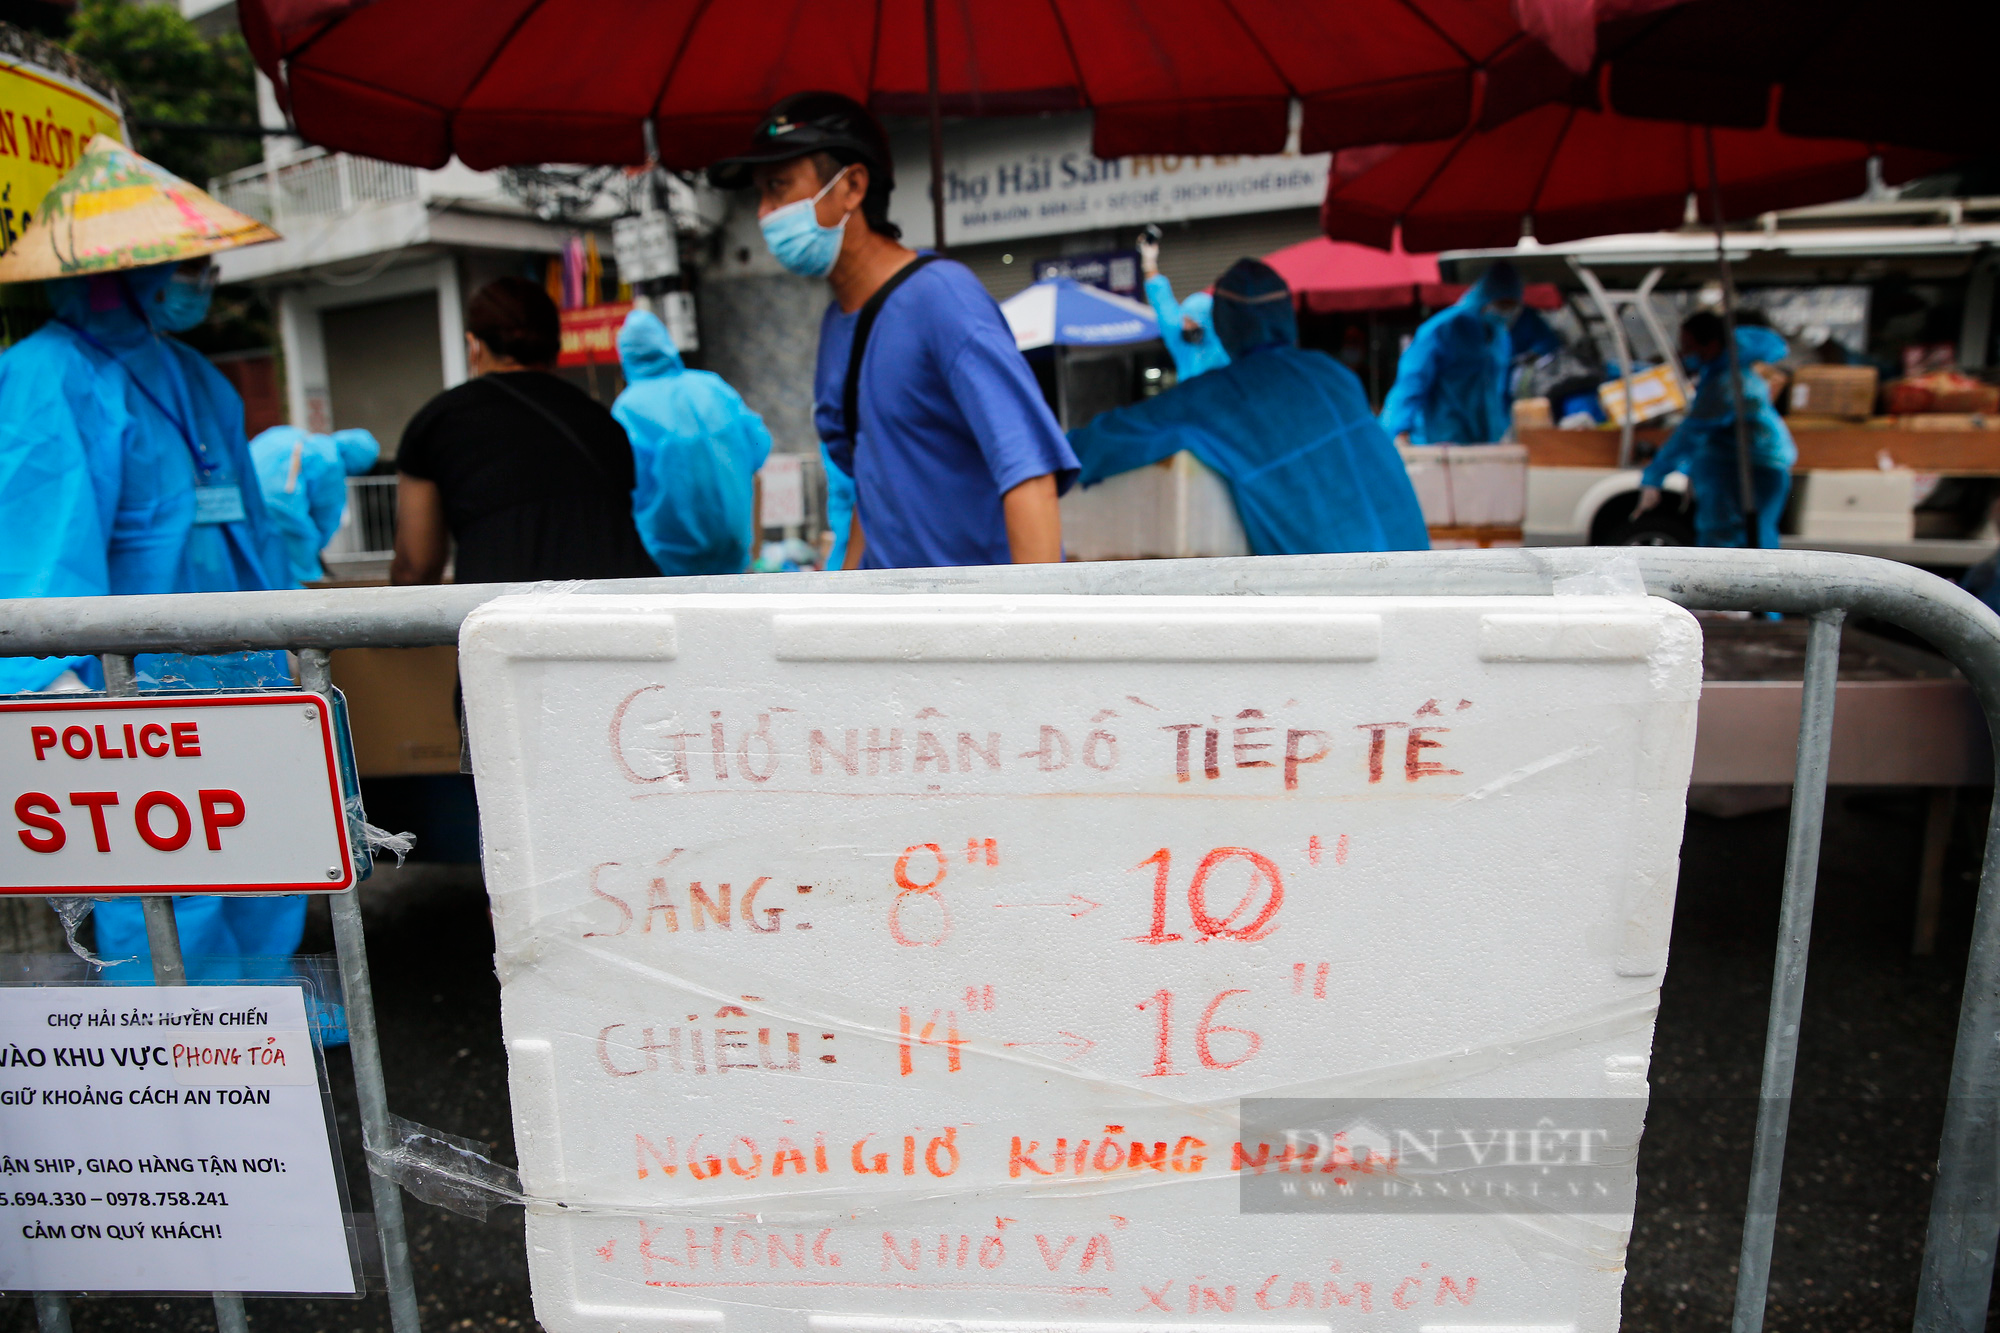 Hàng trăm người xếp hàng tiếp tế thực phẩm cho một phường bị cách ly thêm 14 ngày tại Hà Nội - Ảnh 6.